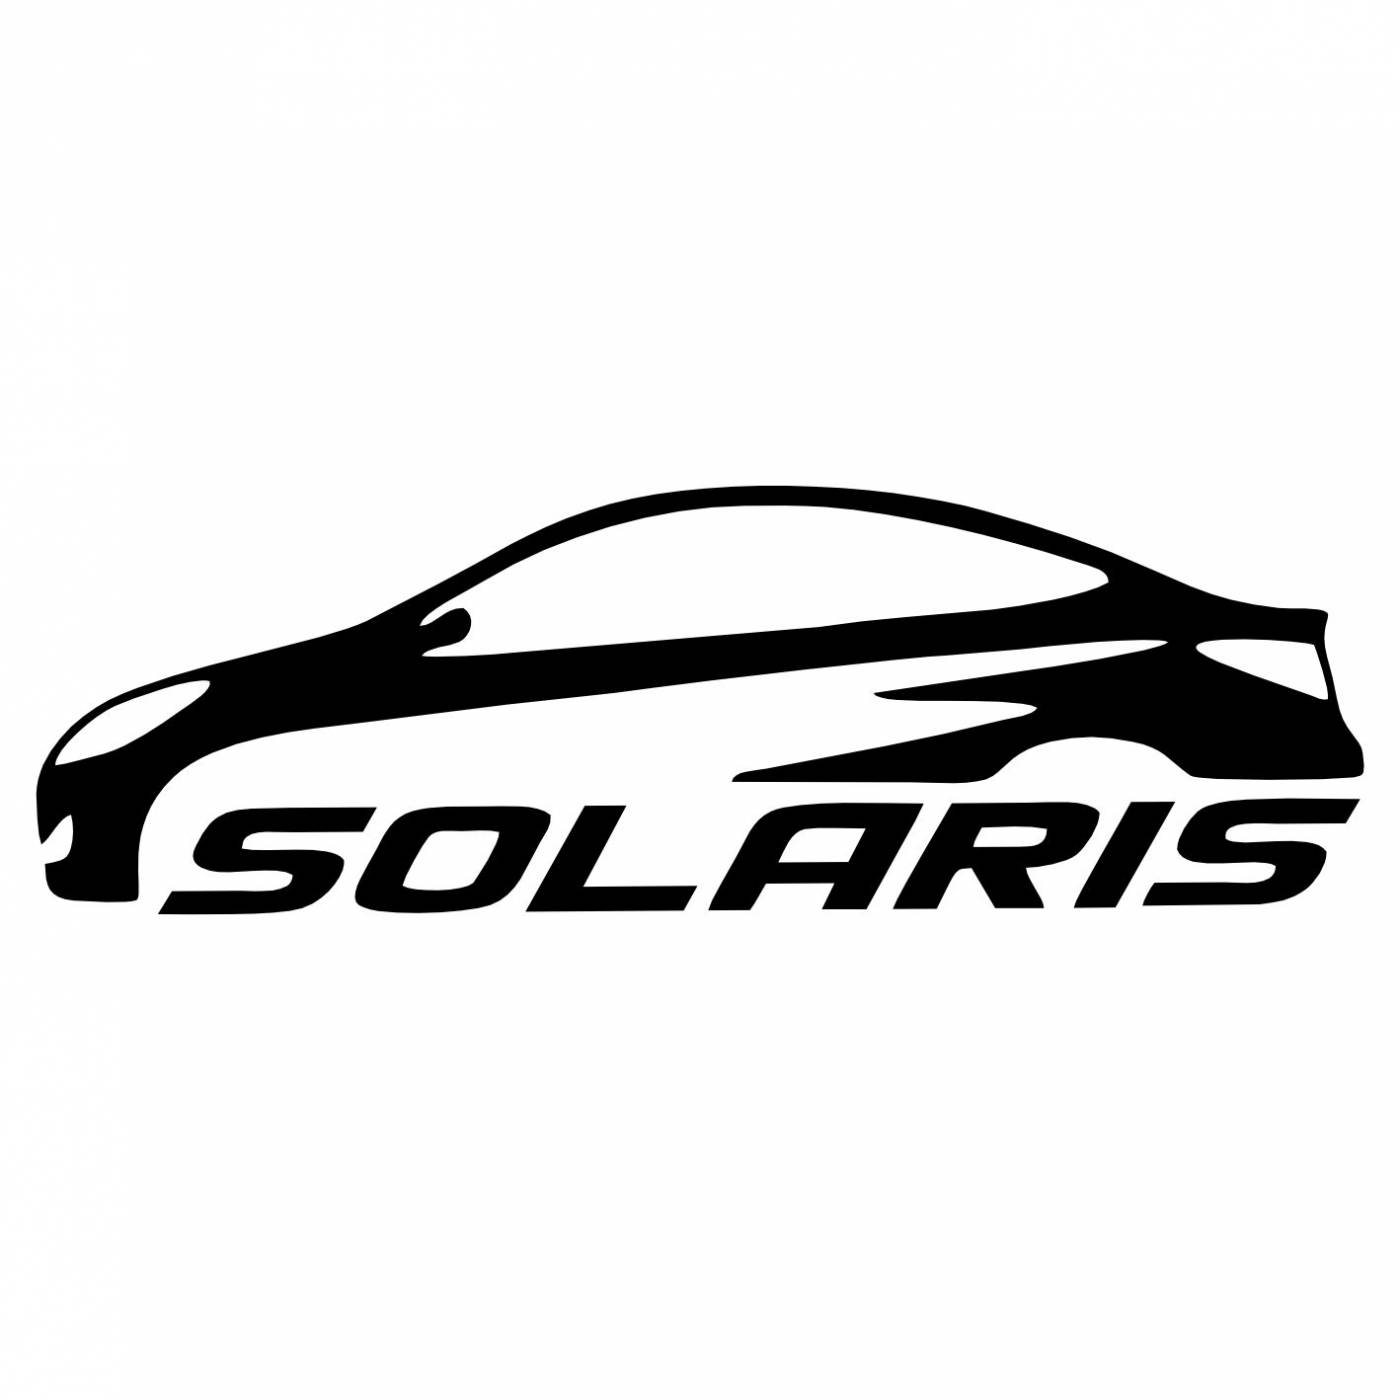 Hyundai Solaris надпись